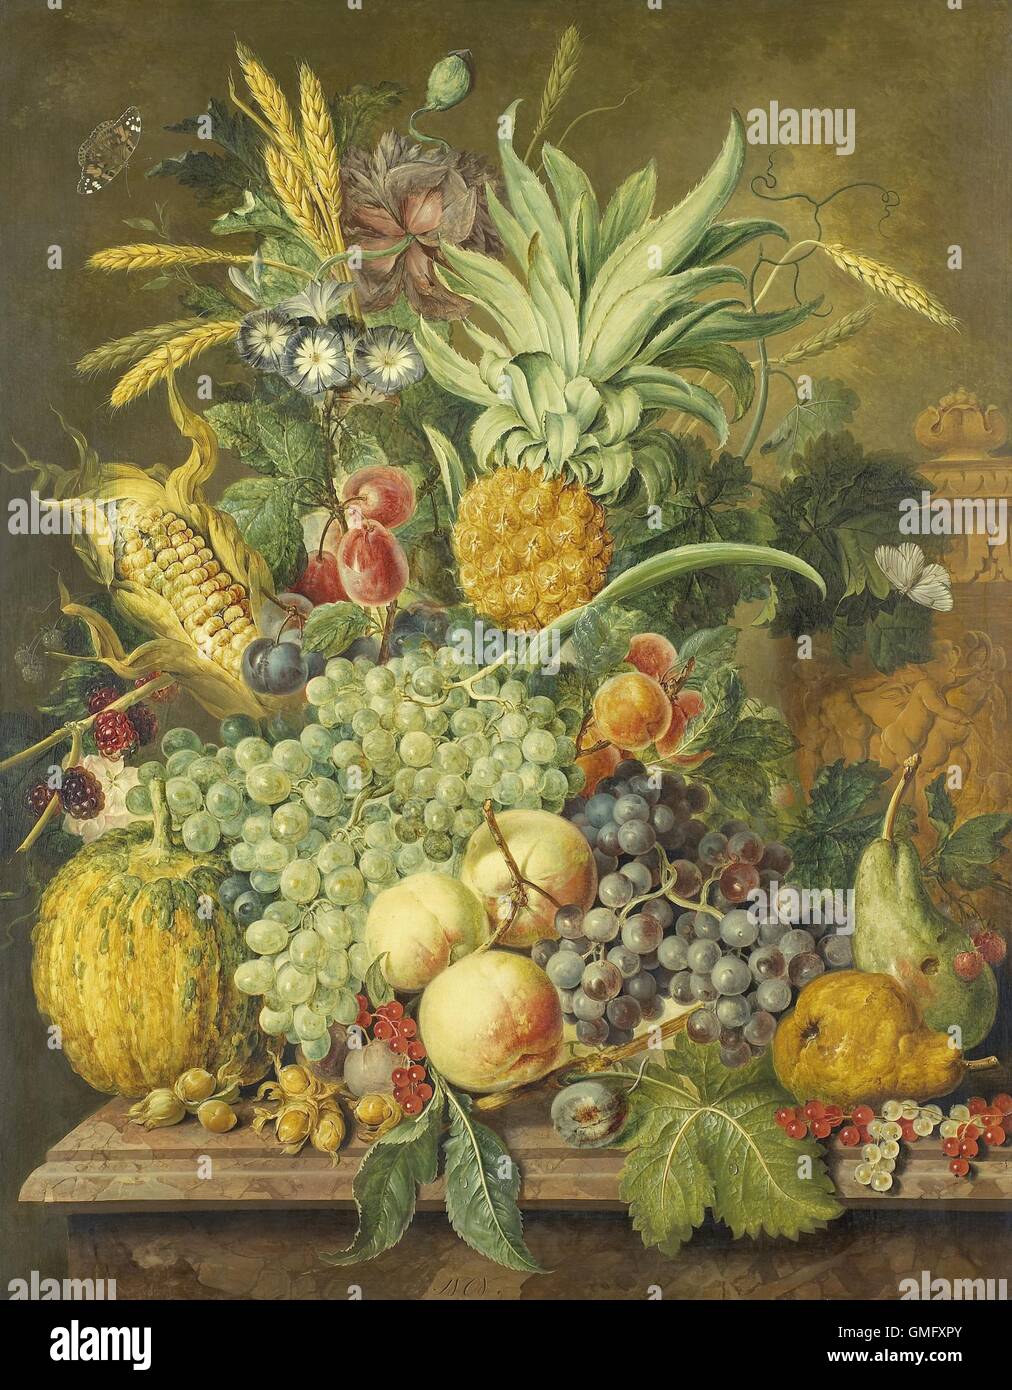 Stillleben mit Früchten, von Jacobus Linthorst, 1808, niederländische Malerei, Öl auf Holz. Rich Anordnung der verschiedenen Obst mit Gemüse, Blumen und ein Schmetterling. Auf der rechten Seite ist eine Vase verziert mit Putten (BSLOC 2016 2 281) Stockfoto